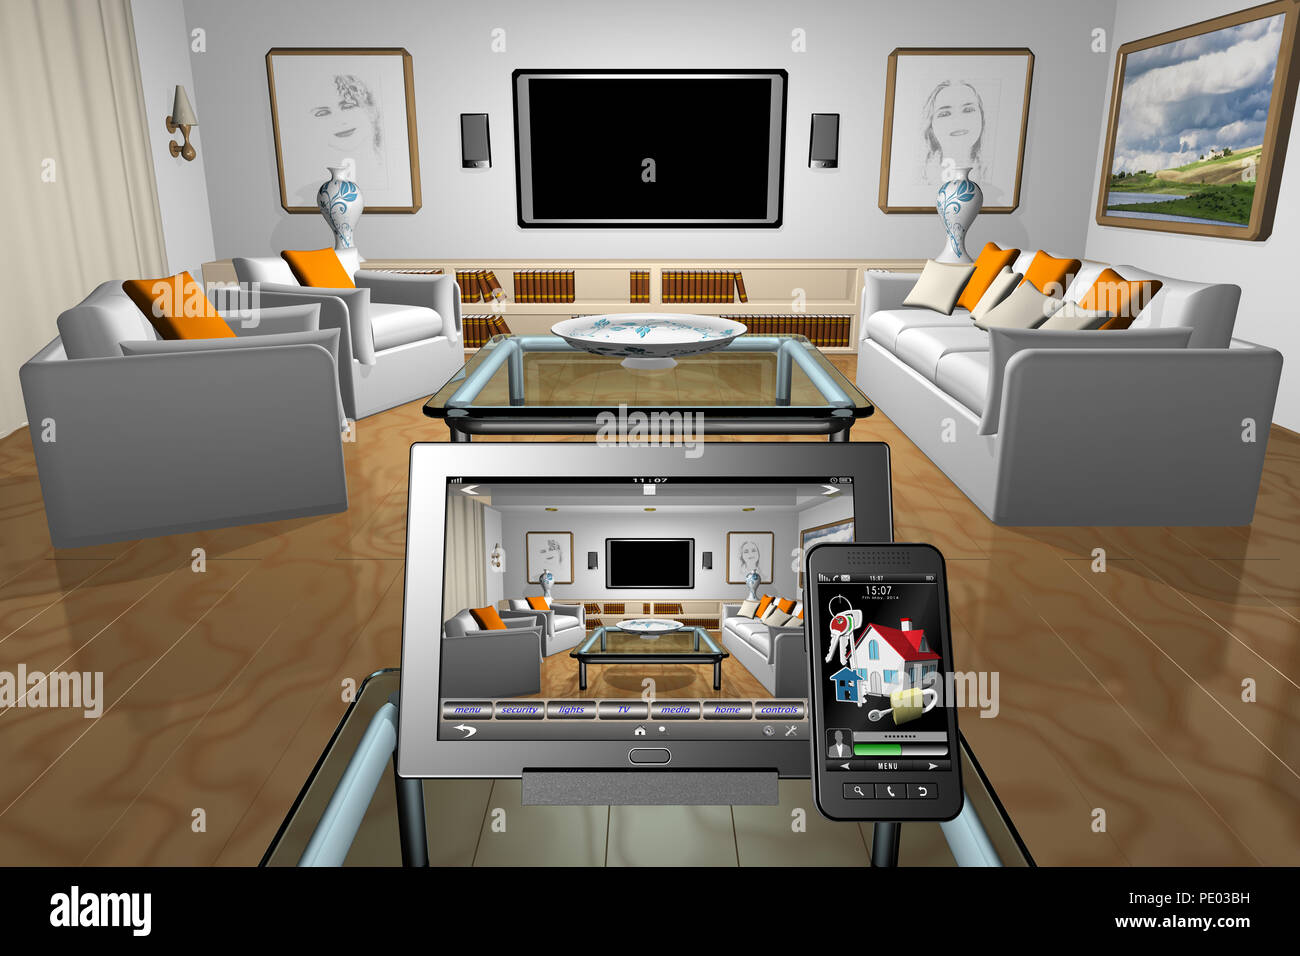 Ilustración 3D. Salón de la casa de control, la automatización del hogar. Tablet smartphone. Foto de stock